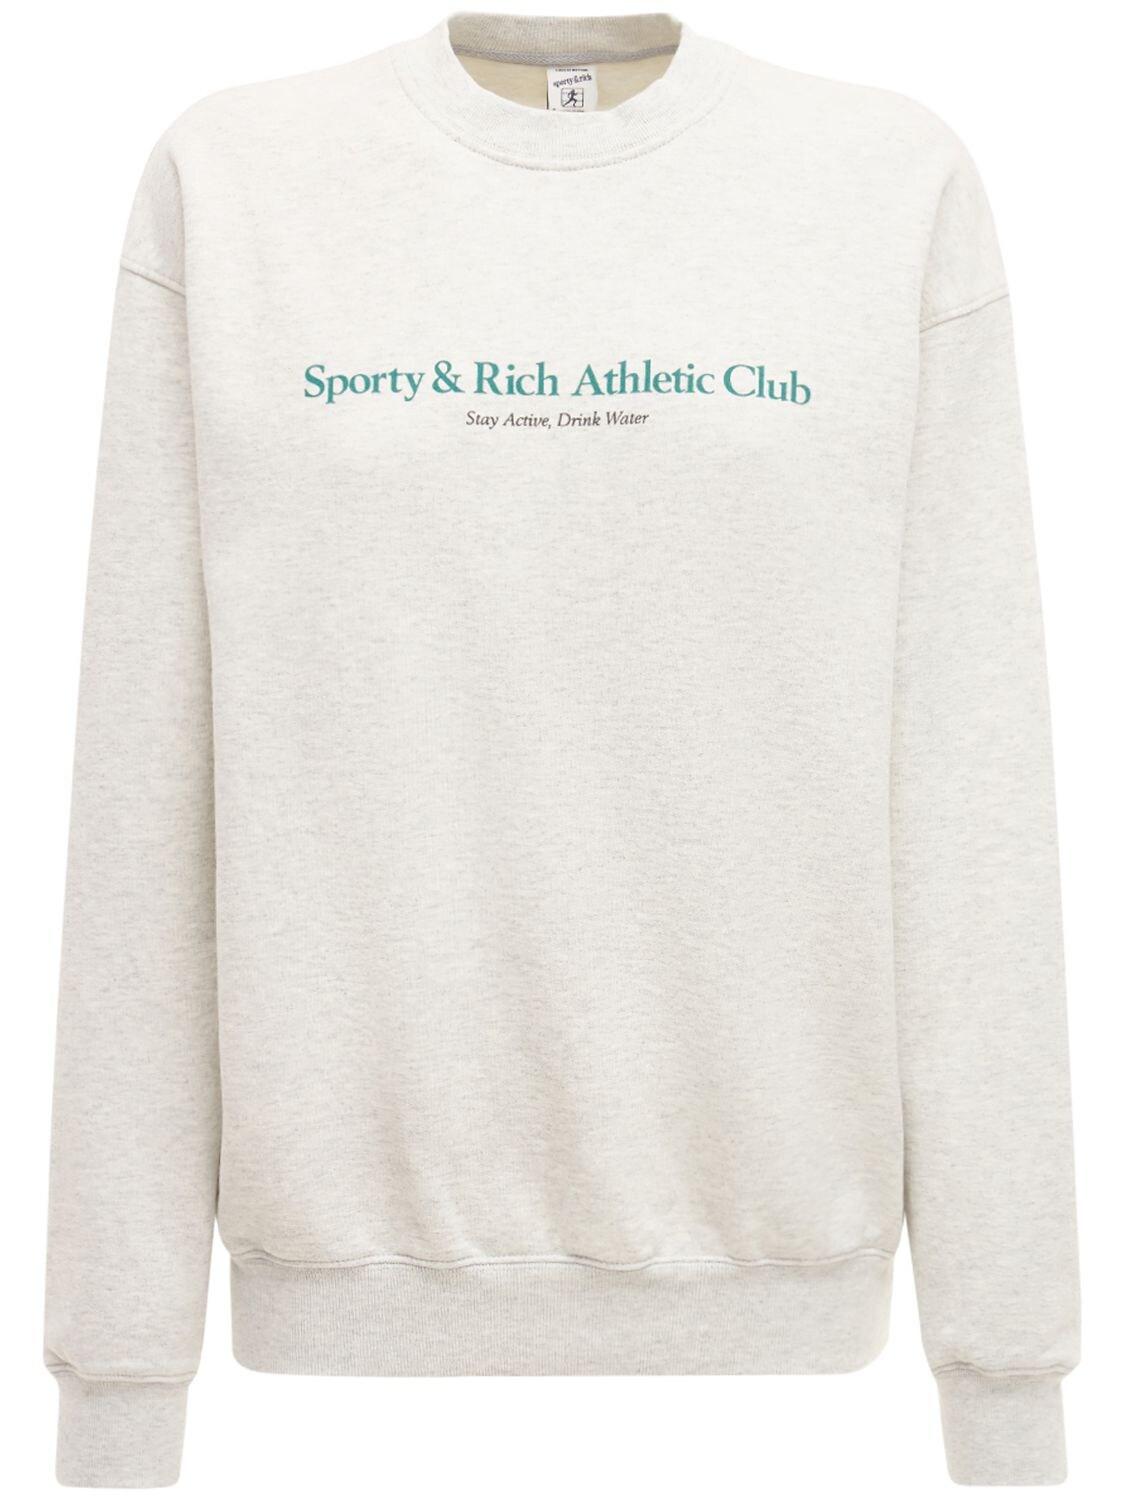 Sporty & Rich Athletic Club Sweatshirt in Gray | Lyst